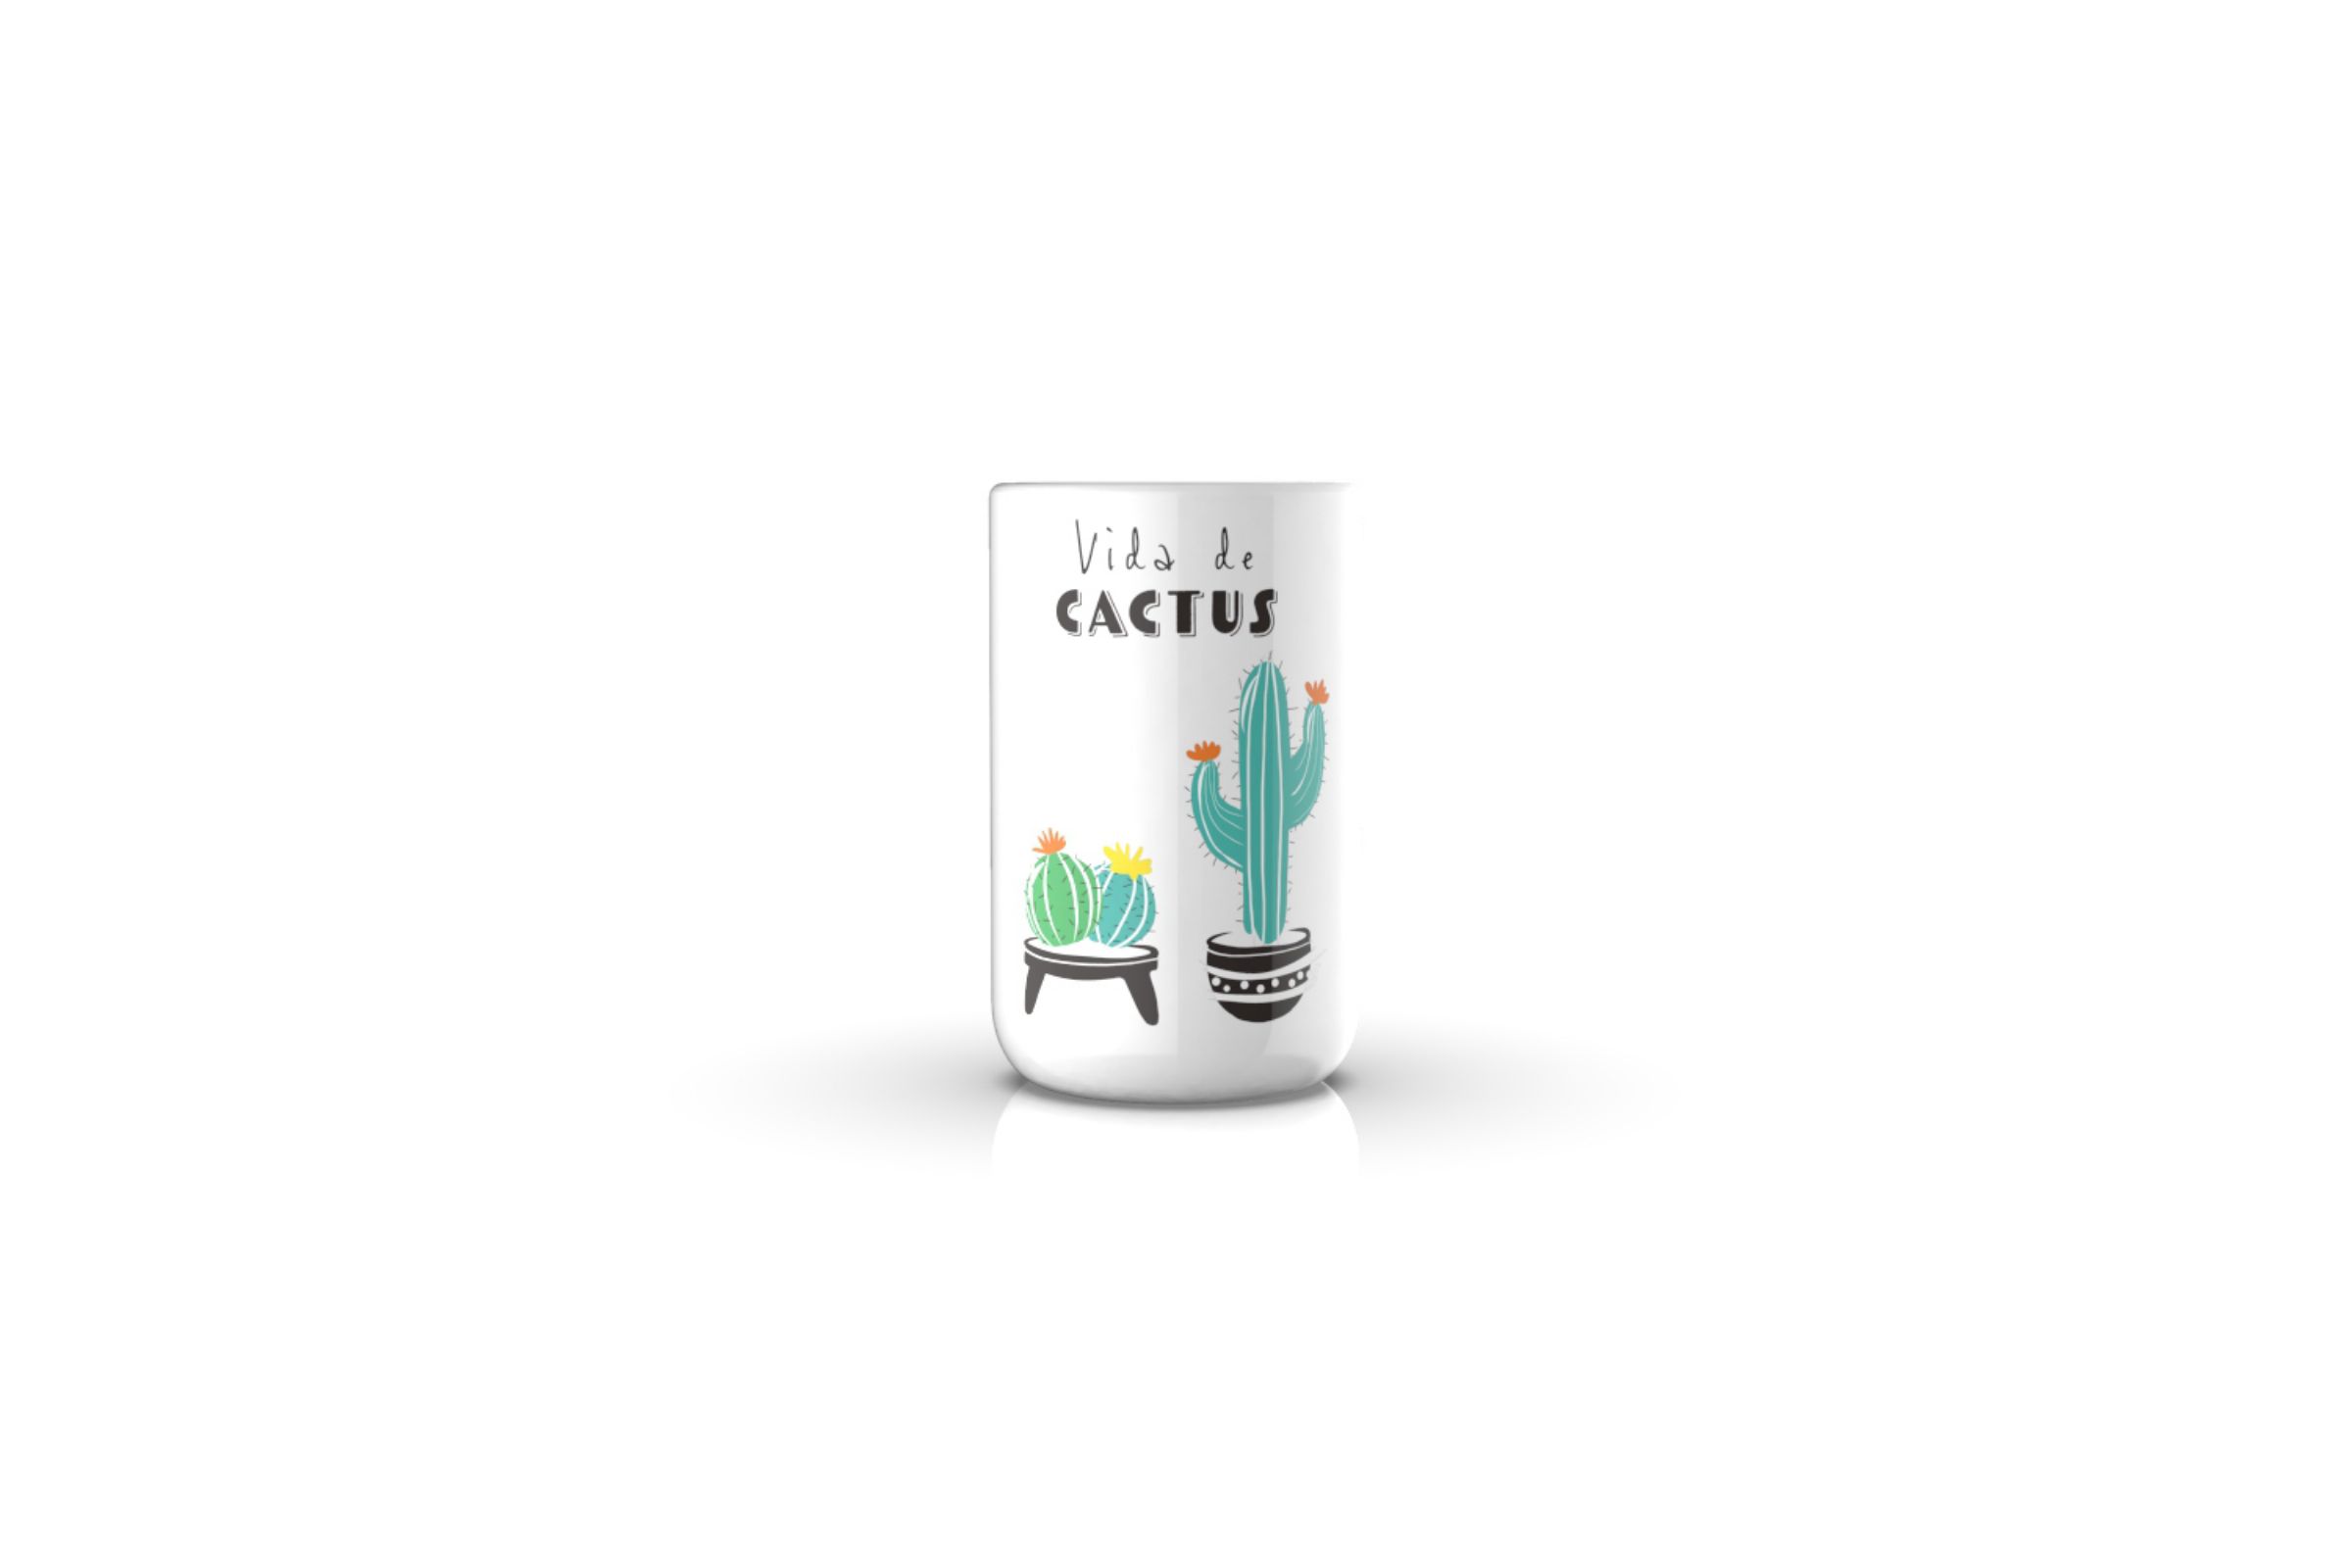 Set accessori bagno Cactus - Porta spazzolini Cactus